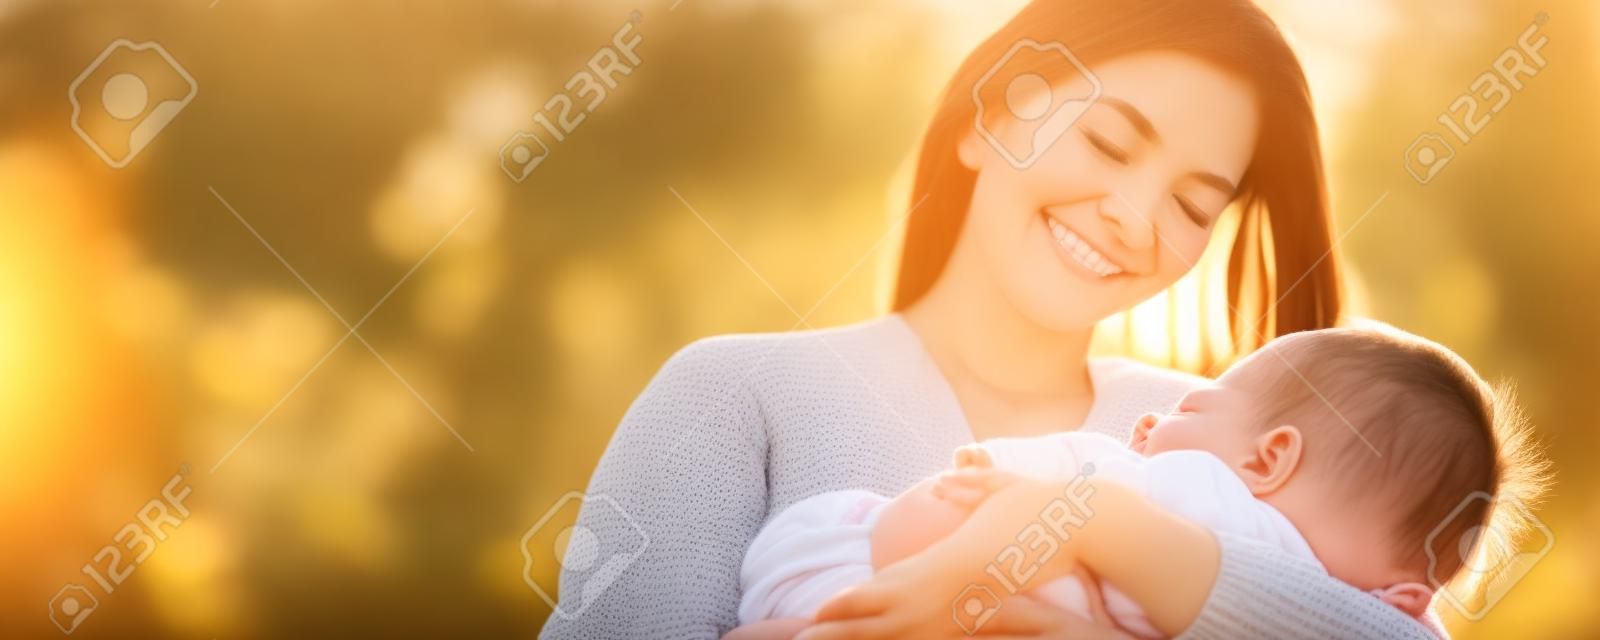 Ein herzerwärmender Muttertagsmoment, festgehalten im Park bei Sonnenuntergang. Eine schöne Mutter wiegt ihr schlafendes Baby, sonnt sich in der friedlichen Natur und lächelt ihr Neugeborenes liebevoll an. Familienbetreuung vom Feinsten